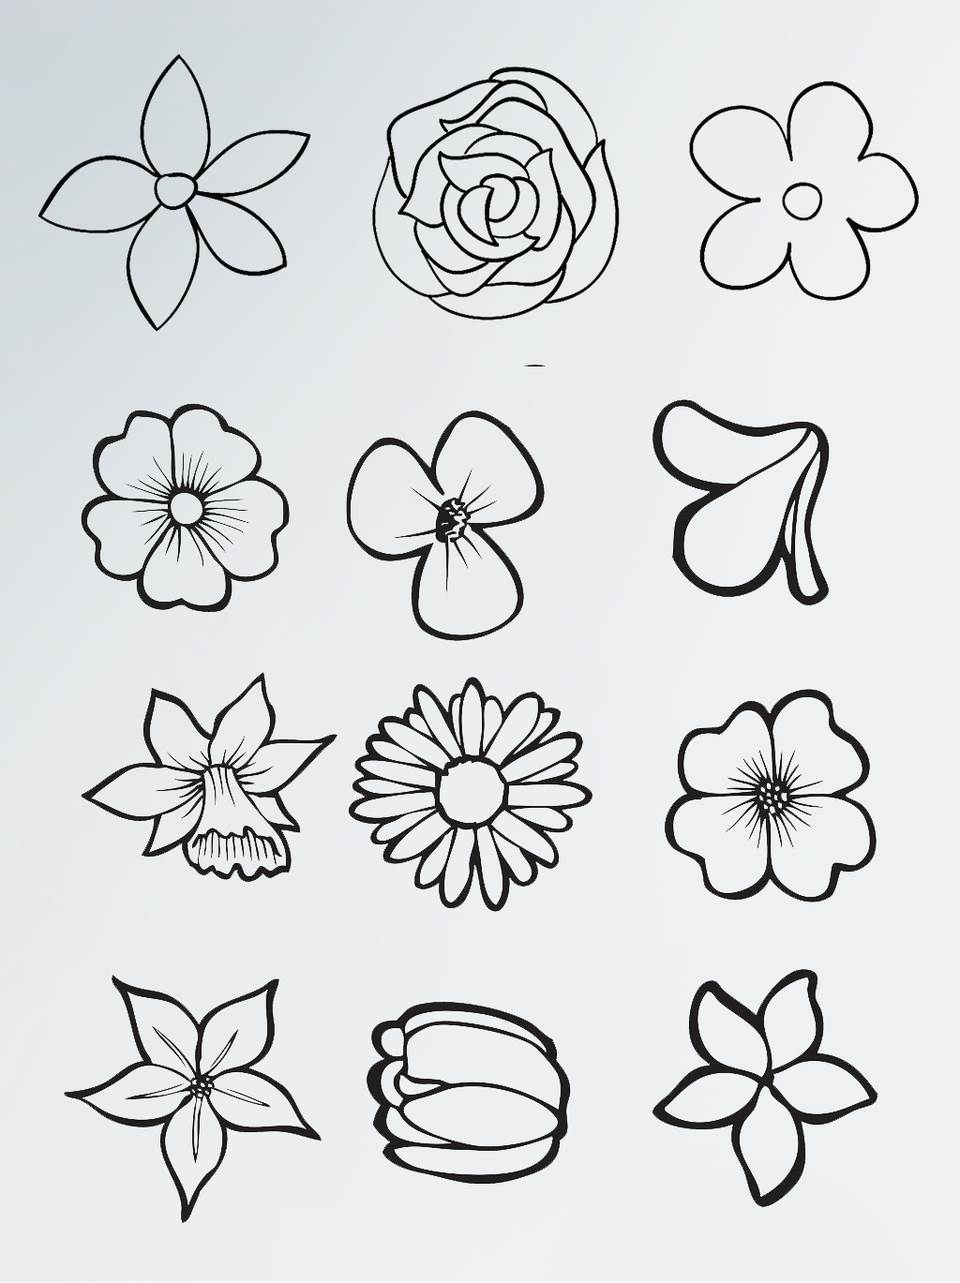 复杂简笔画 花卉图片